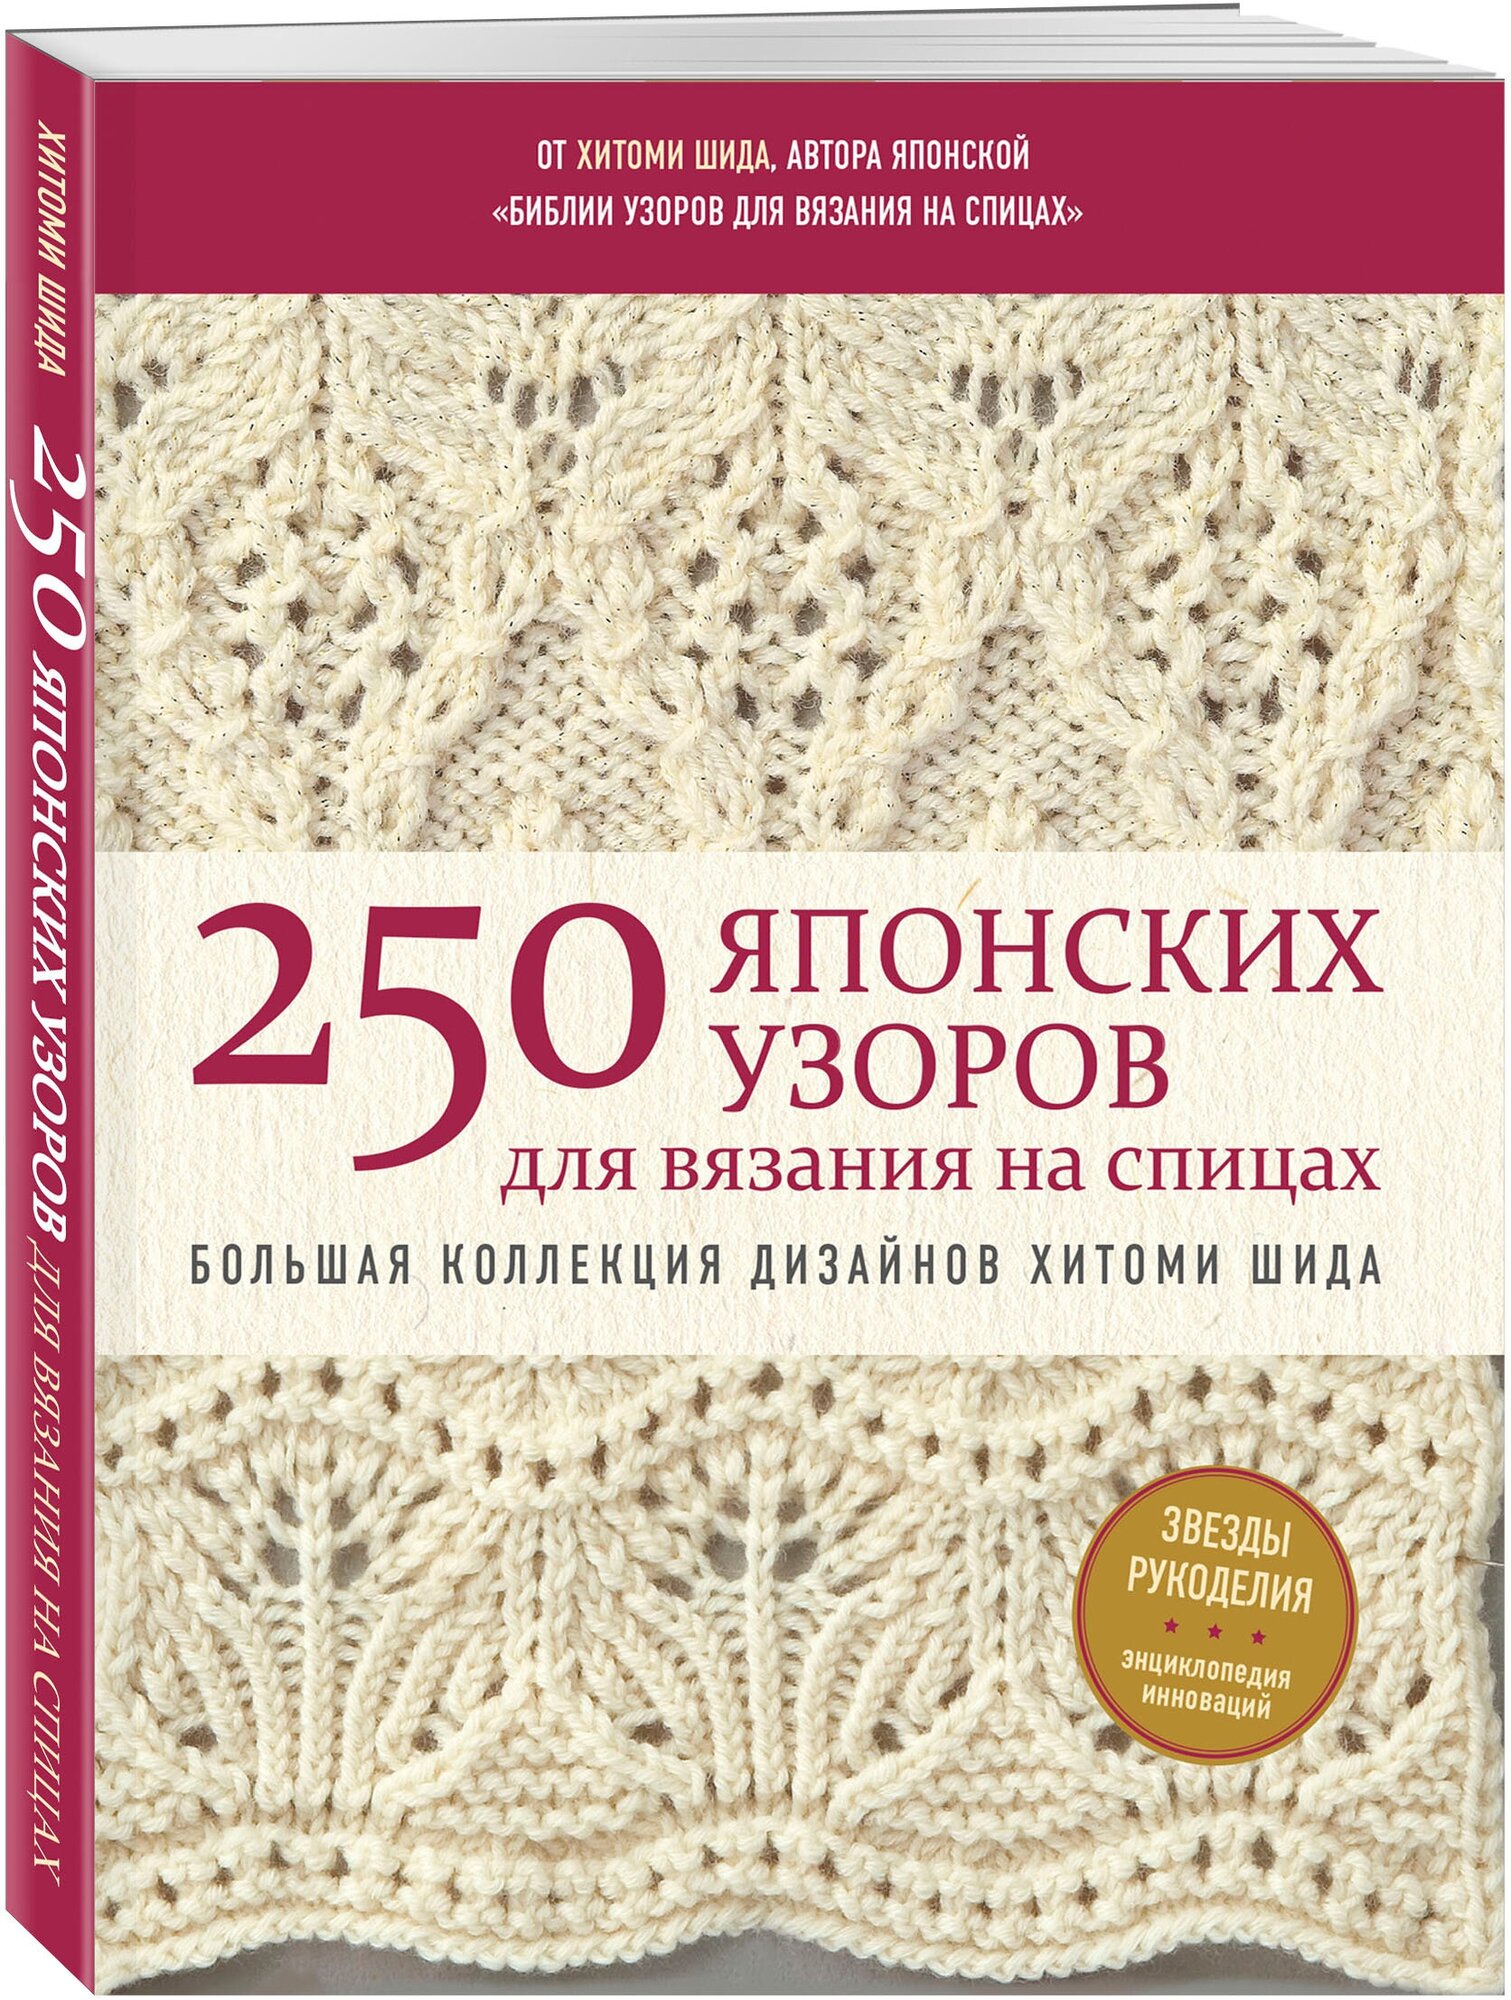 250 японских узоров для вязания на спицах. Большая коллекция дизайнов Хитоми Шида. Библия вязания на спицах (мягкая обложка) - фото №1